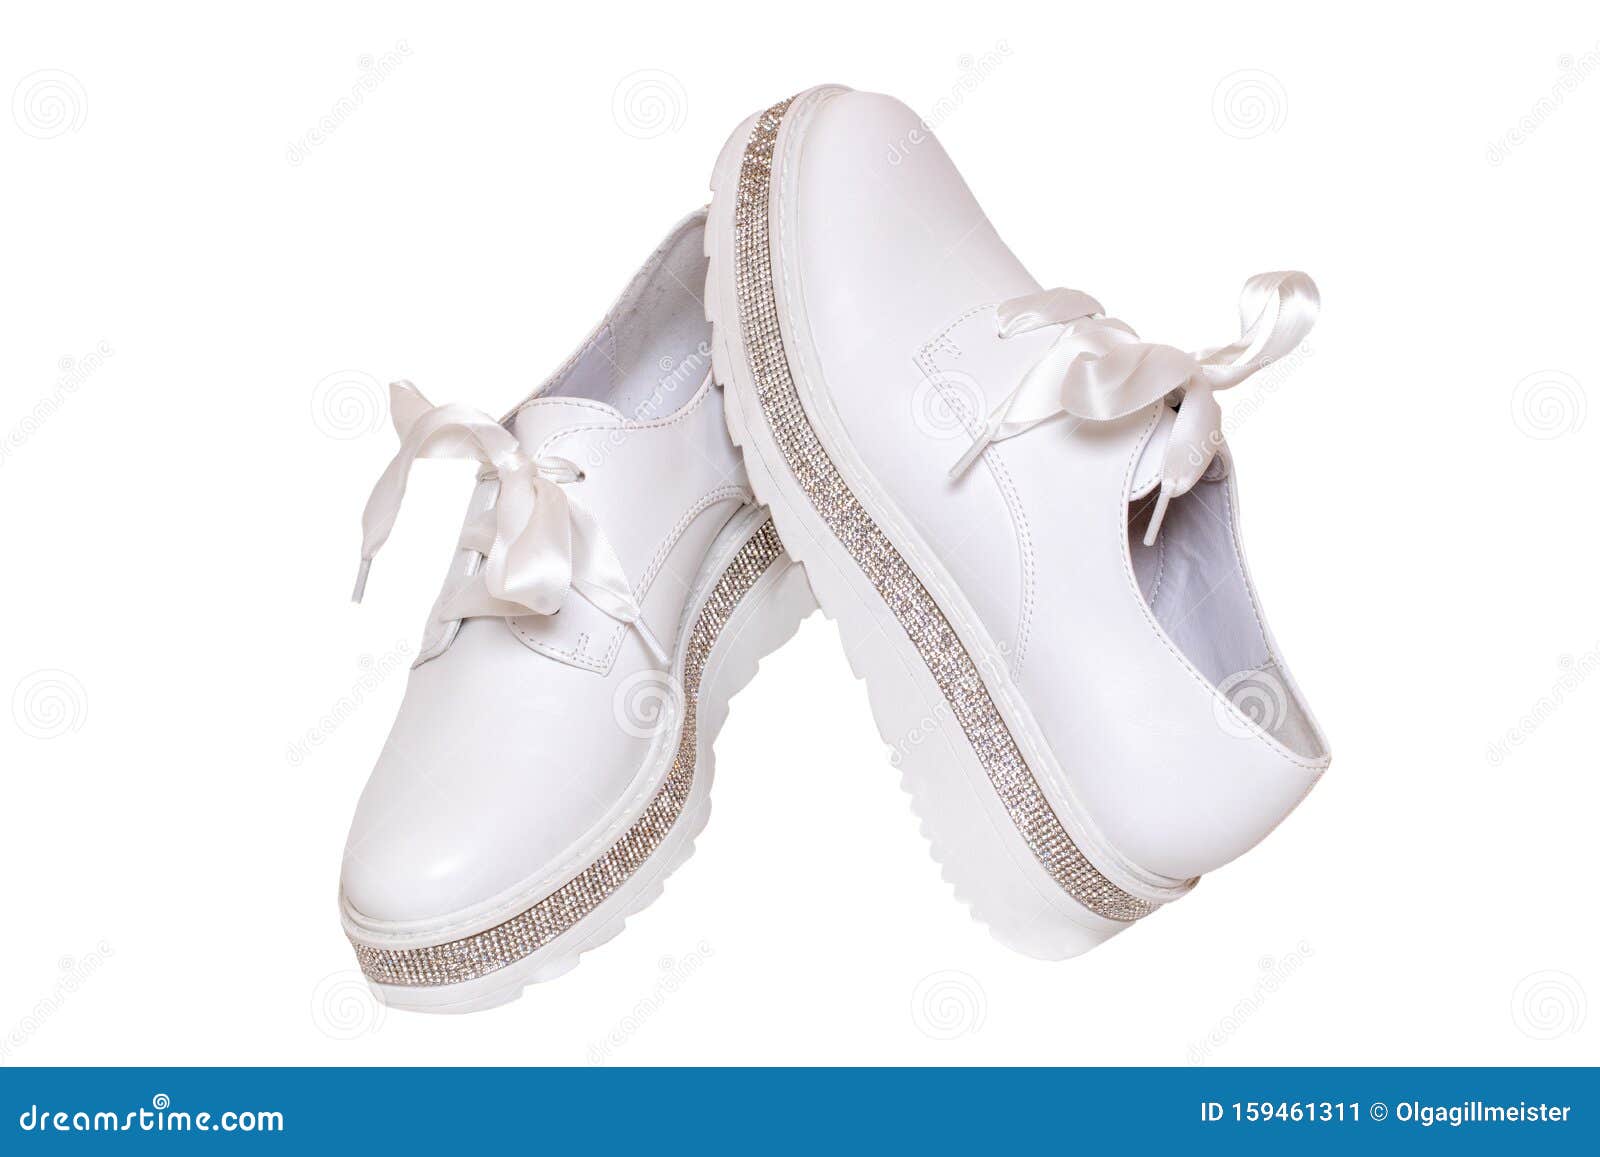 elegant white sneakers